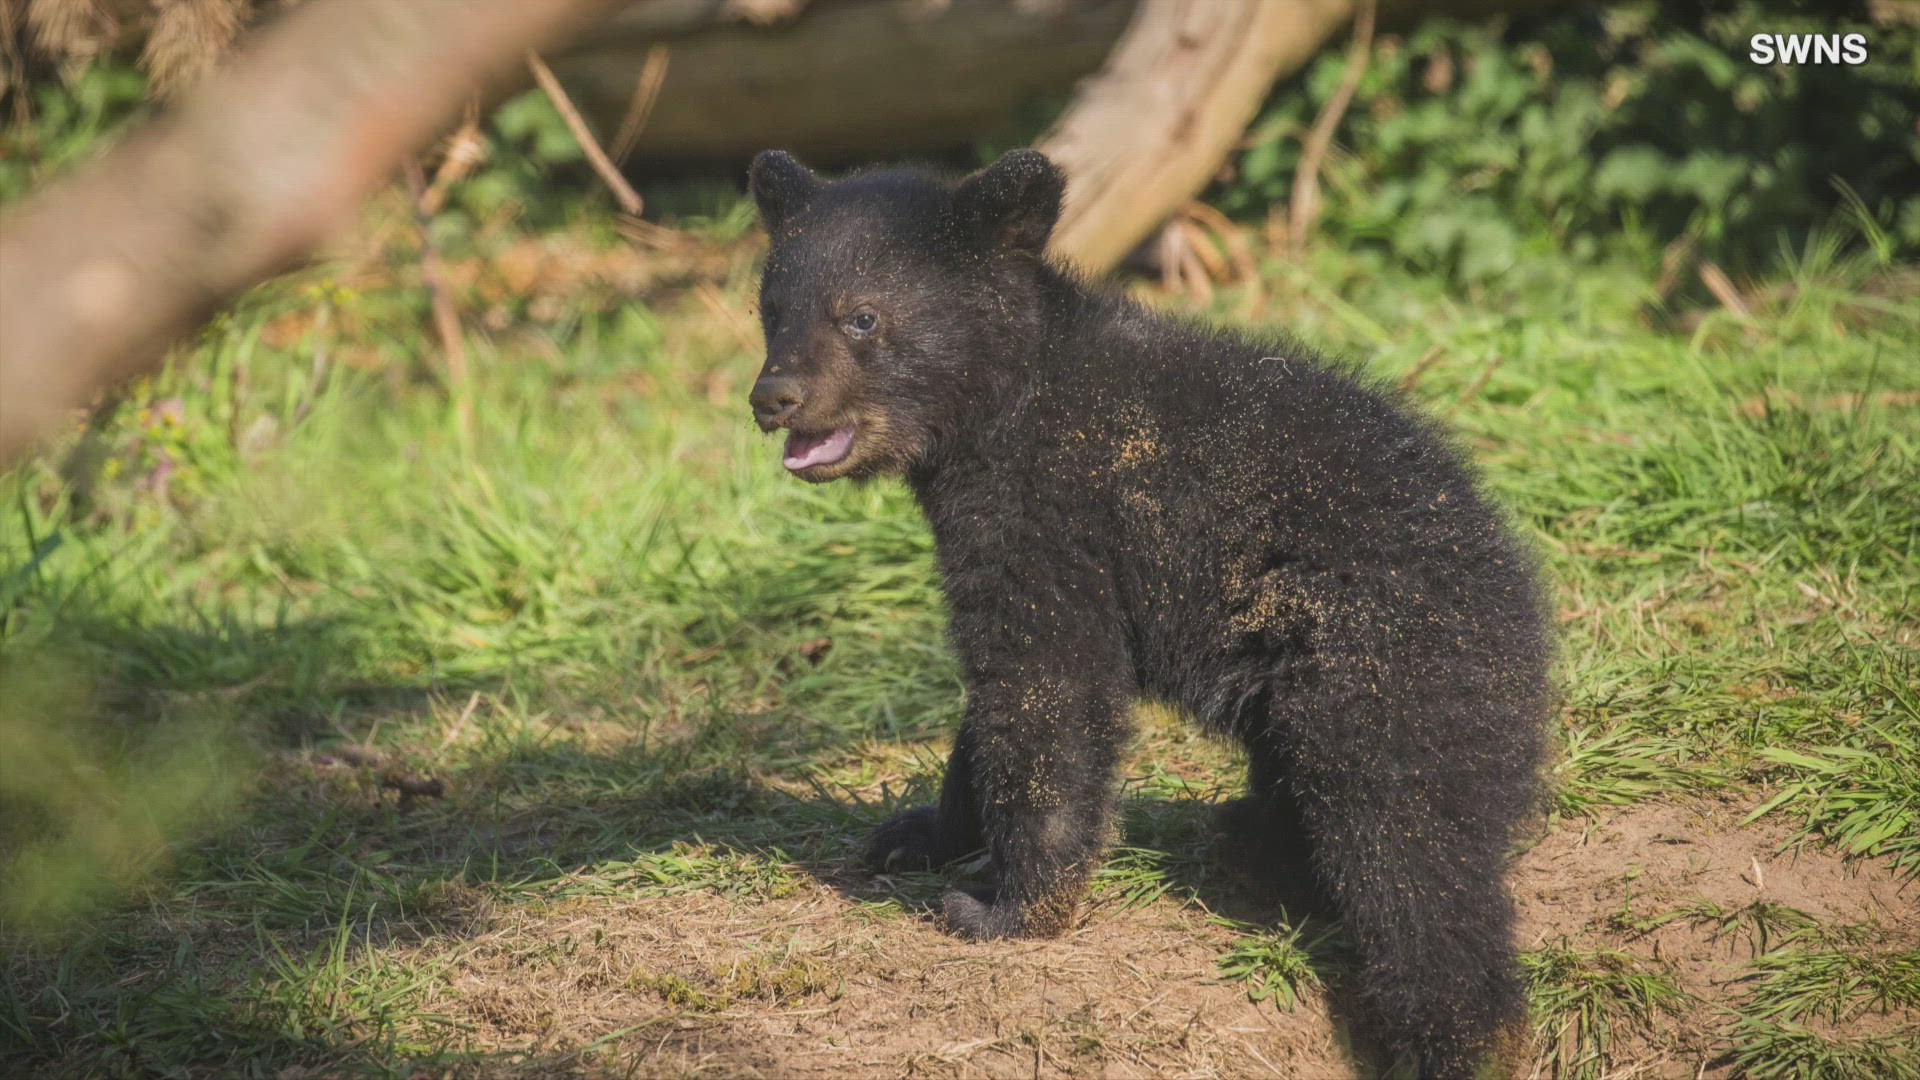 cute black bear cubs